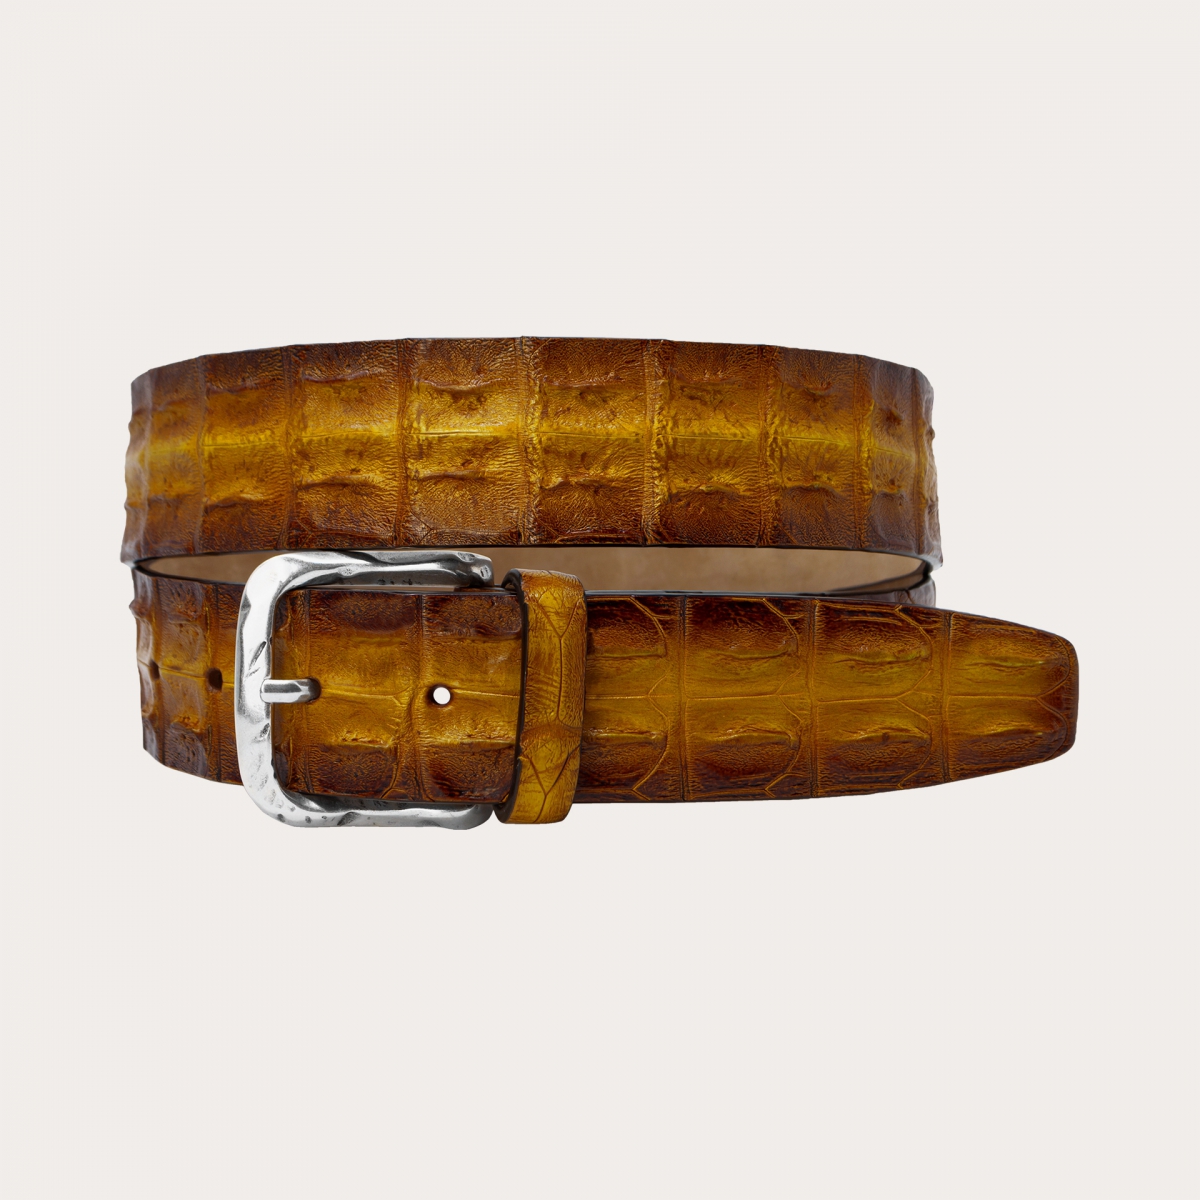 BRUCLE Cinturón de cocodrilo coloreado a mano, gold y marron